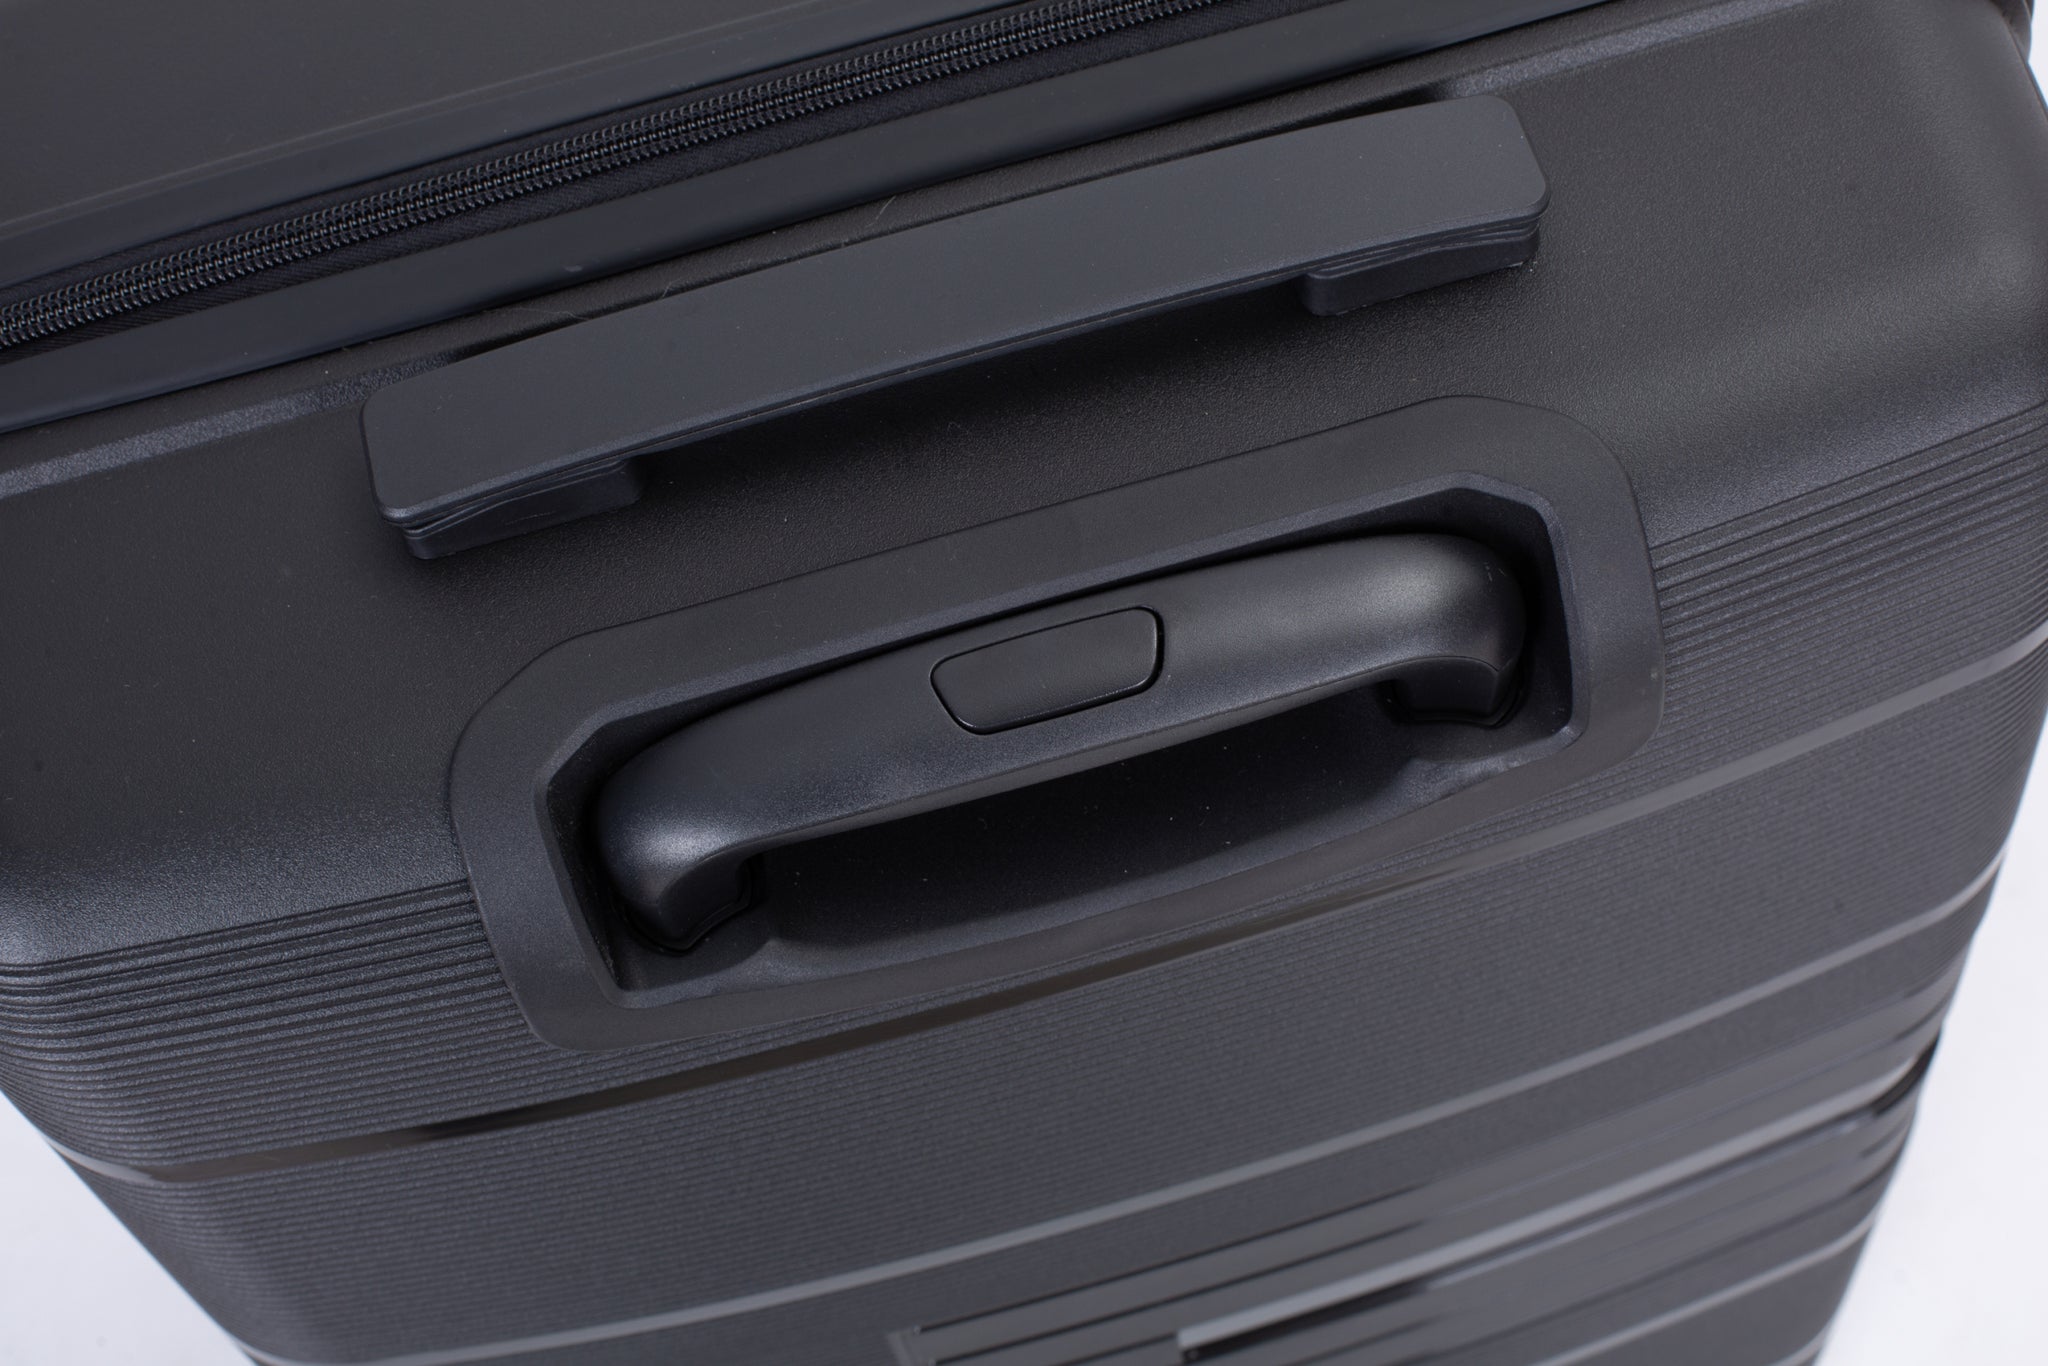 Hardshell Suitcase Double Spinner Wheels PP Luggage black-polypropylene